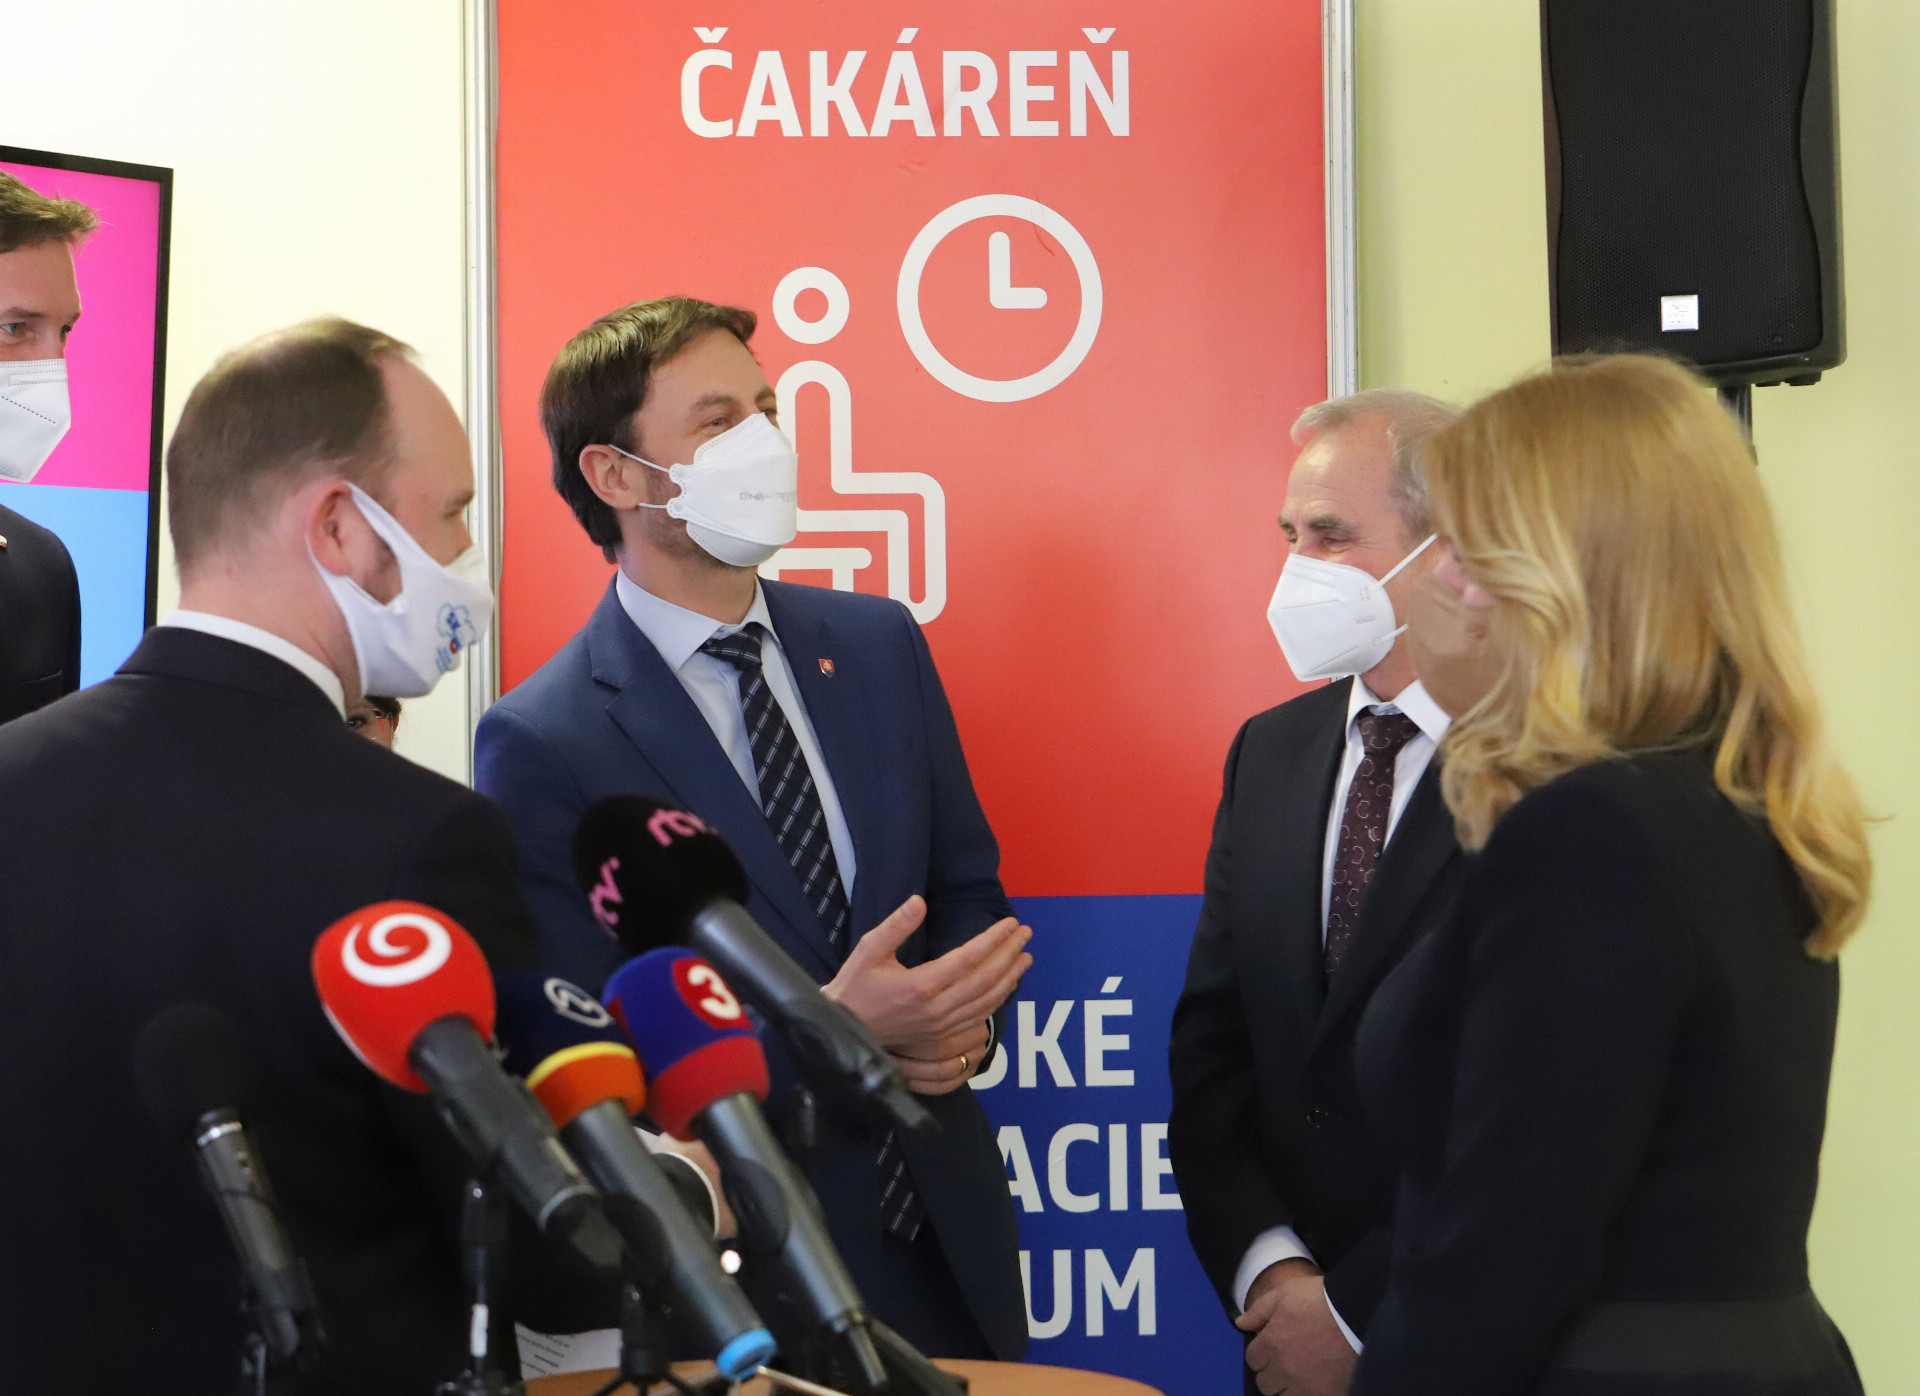 Doterajší zastupujúci minister zdravotníctva Eduard Heger sľuboval, že čakáreň už bude tento týždeň fungovať správne.